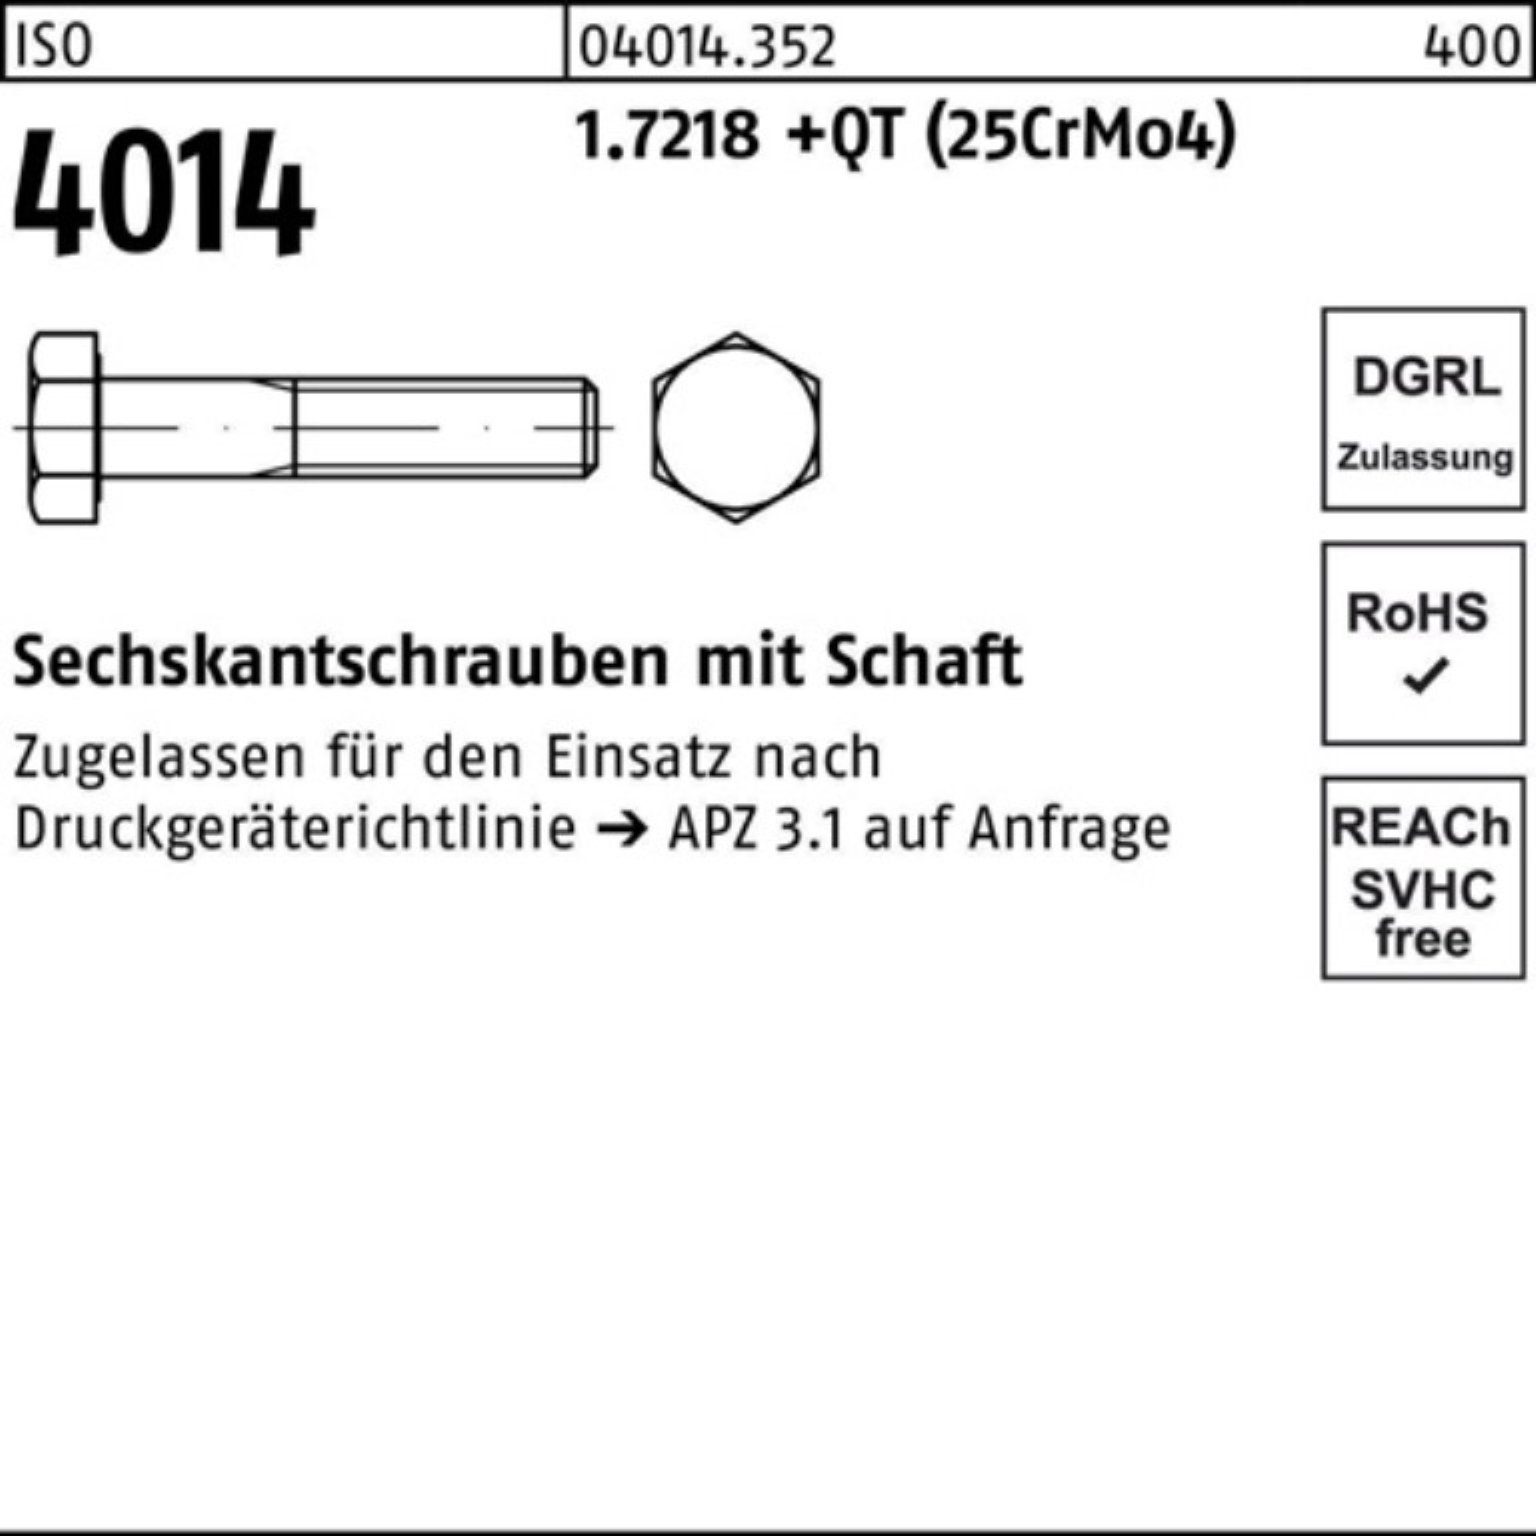 ISO Sechskantschraube Bufab Pack Sechskantschraube M16x (25CrM 85 4014 Schaft 100er +QT 1.7218